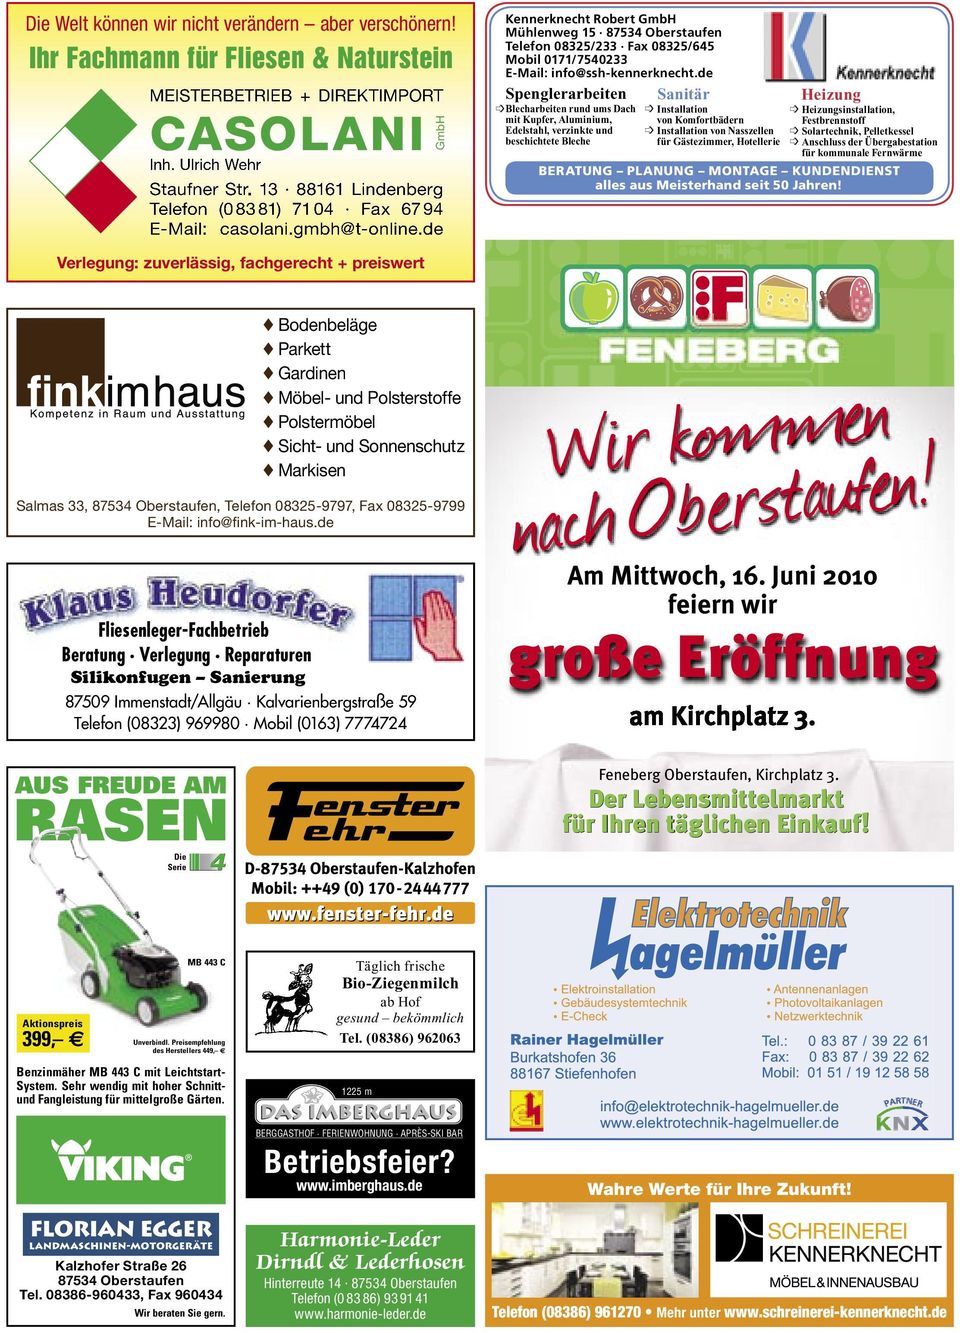 de Kennerknecht Robert GmbH Mühlenweg 15 87534 Oberstaufen Telefon 08325/233 Fax 08325/645 Mobil 0171/7540233 E-Mail: info@ssh-kennerknecht.